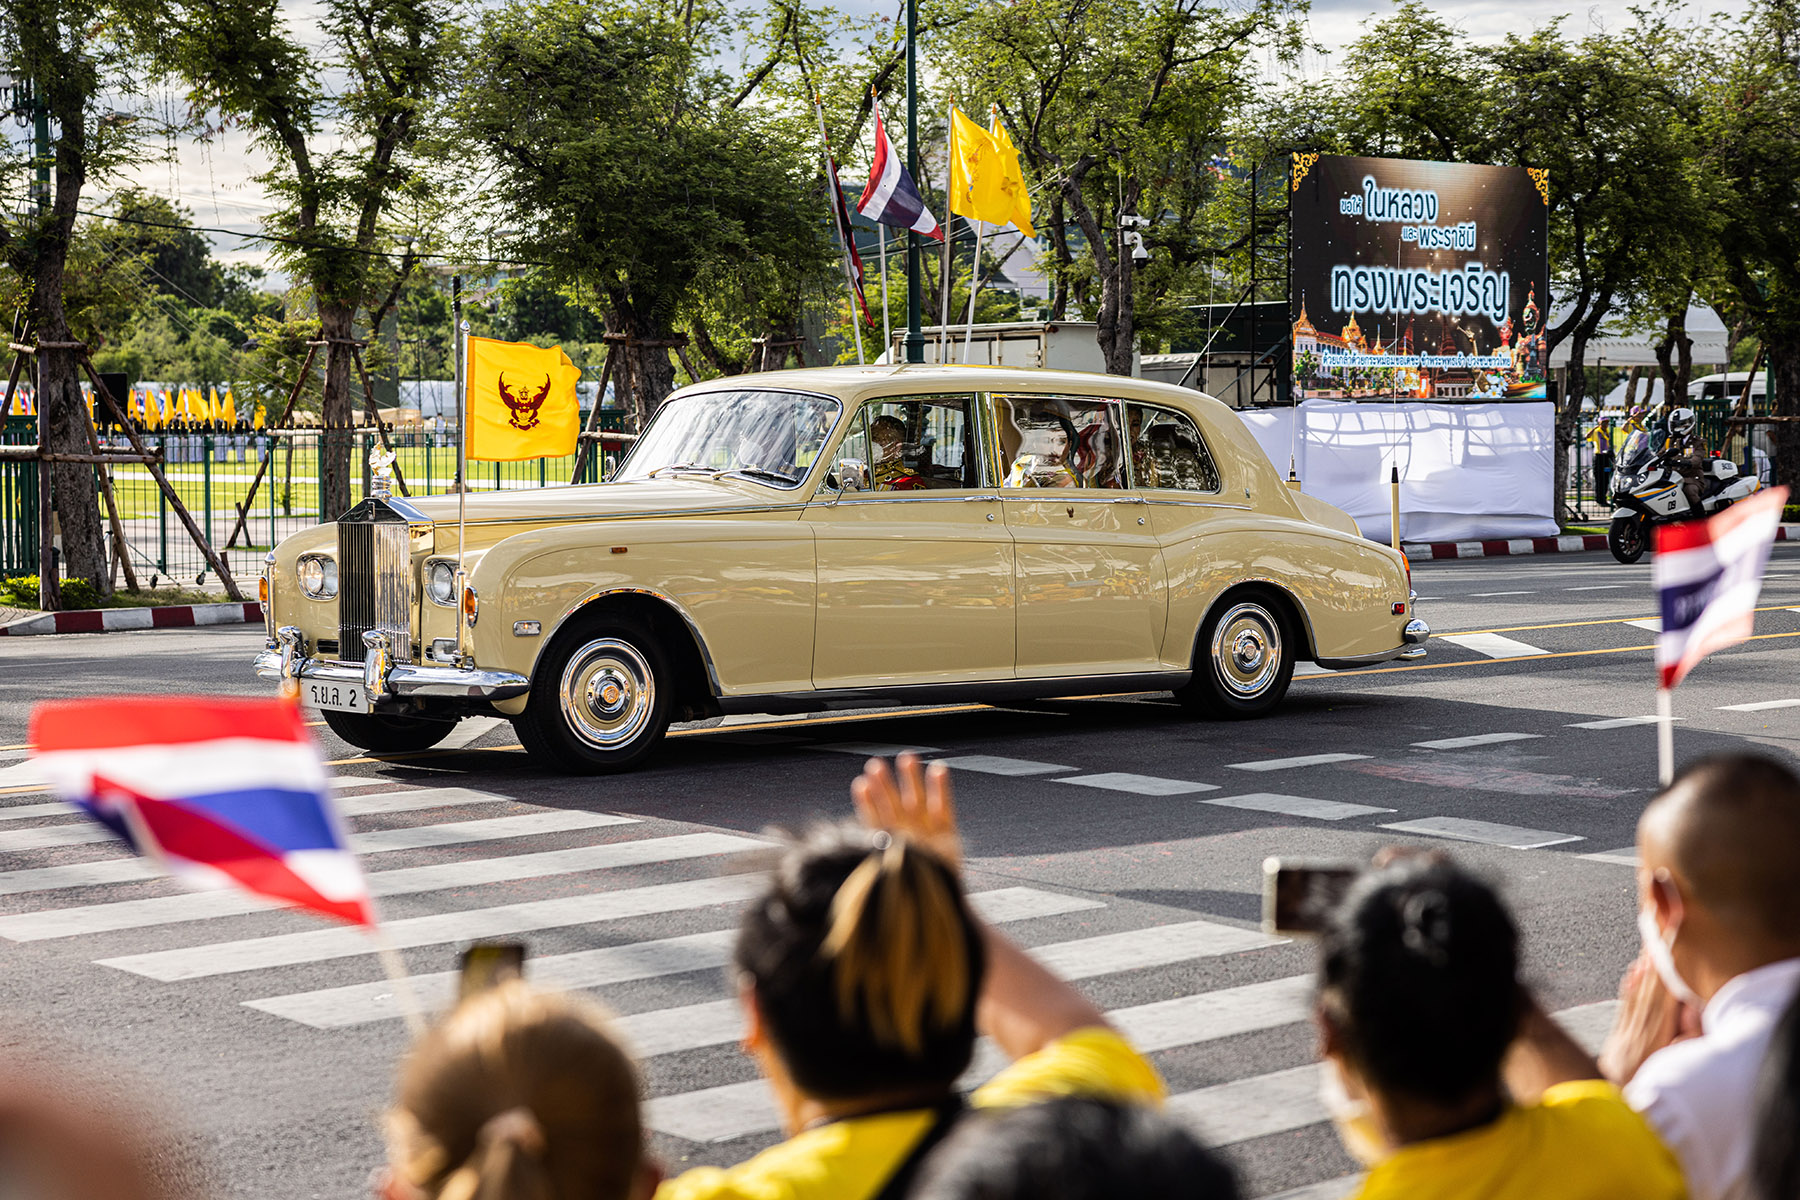 Royal family waves at crowd from motorcade, observing King Maha Vajiralongkorn's 71st birthday